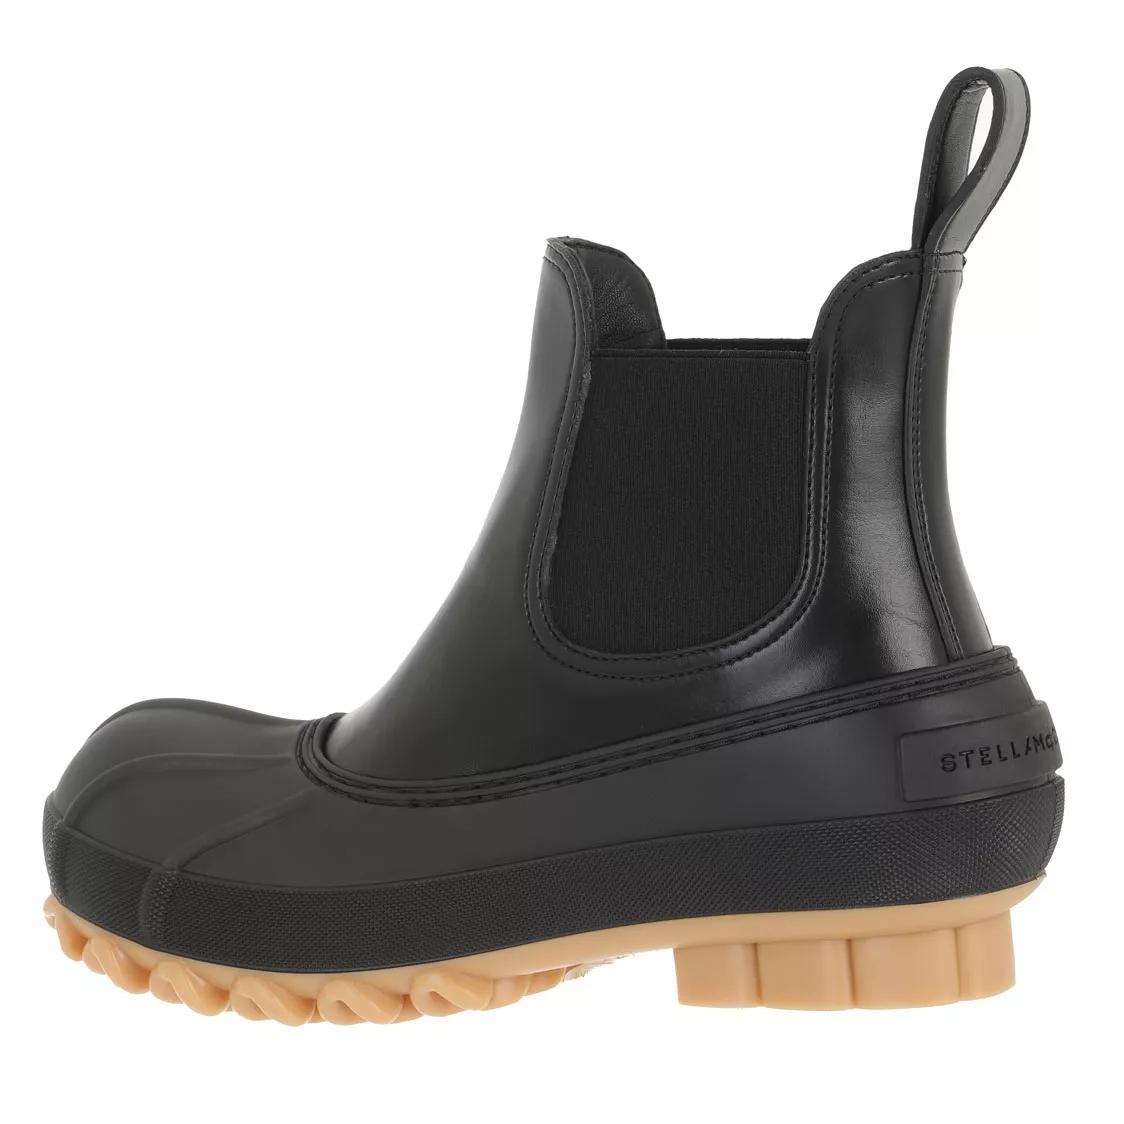 Stella McCartney Boots & Stiefeletten - Boots Leather - Gr. 39 (EU) - in Schwarz - für Damen von Stella Mccartney